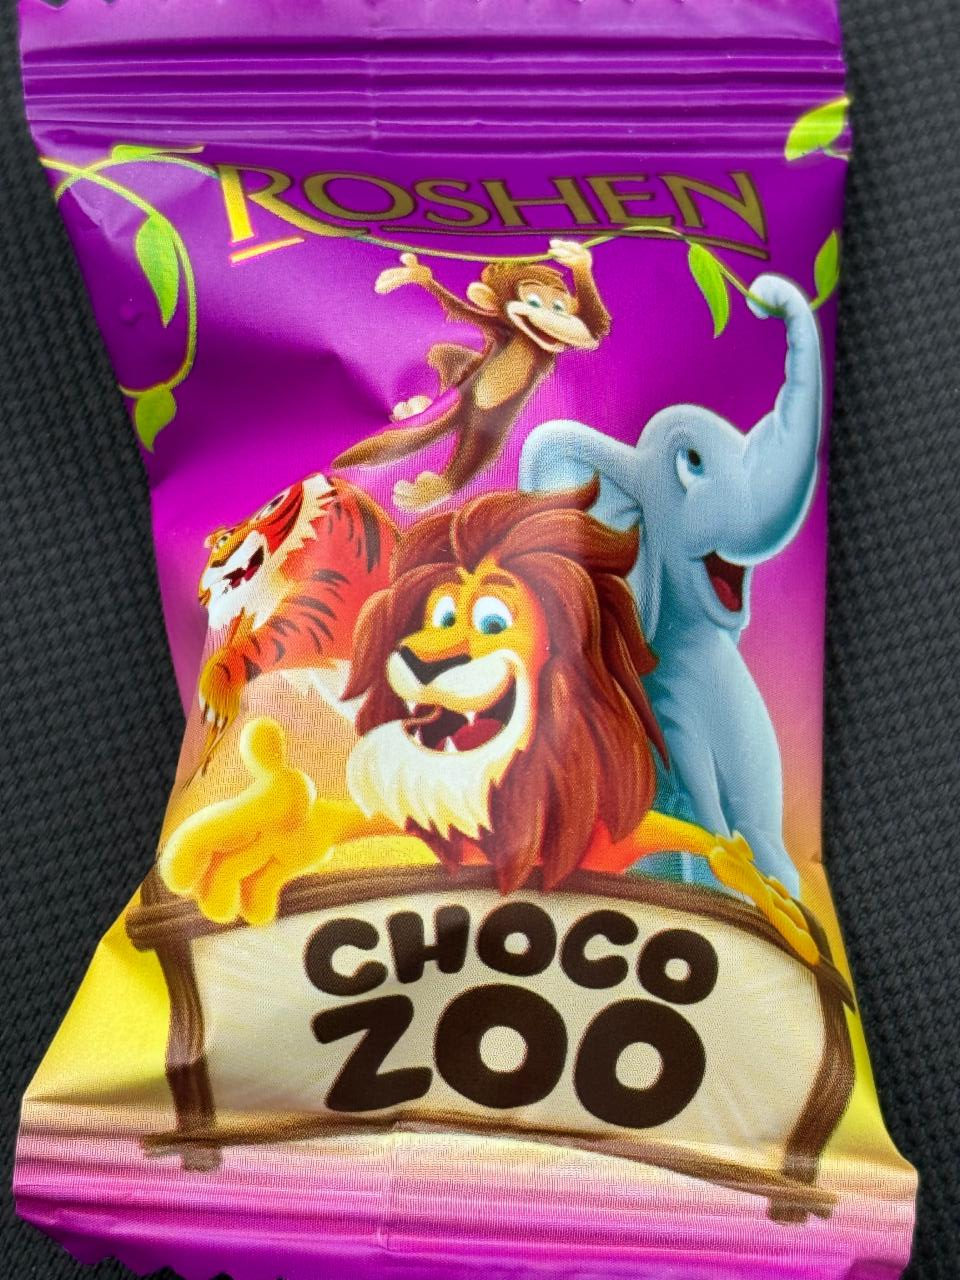 Фото - Цукерки шоколадні з кремово-молочною начинкою Choco Zoo Рошен Roshen